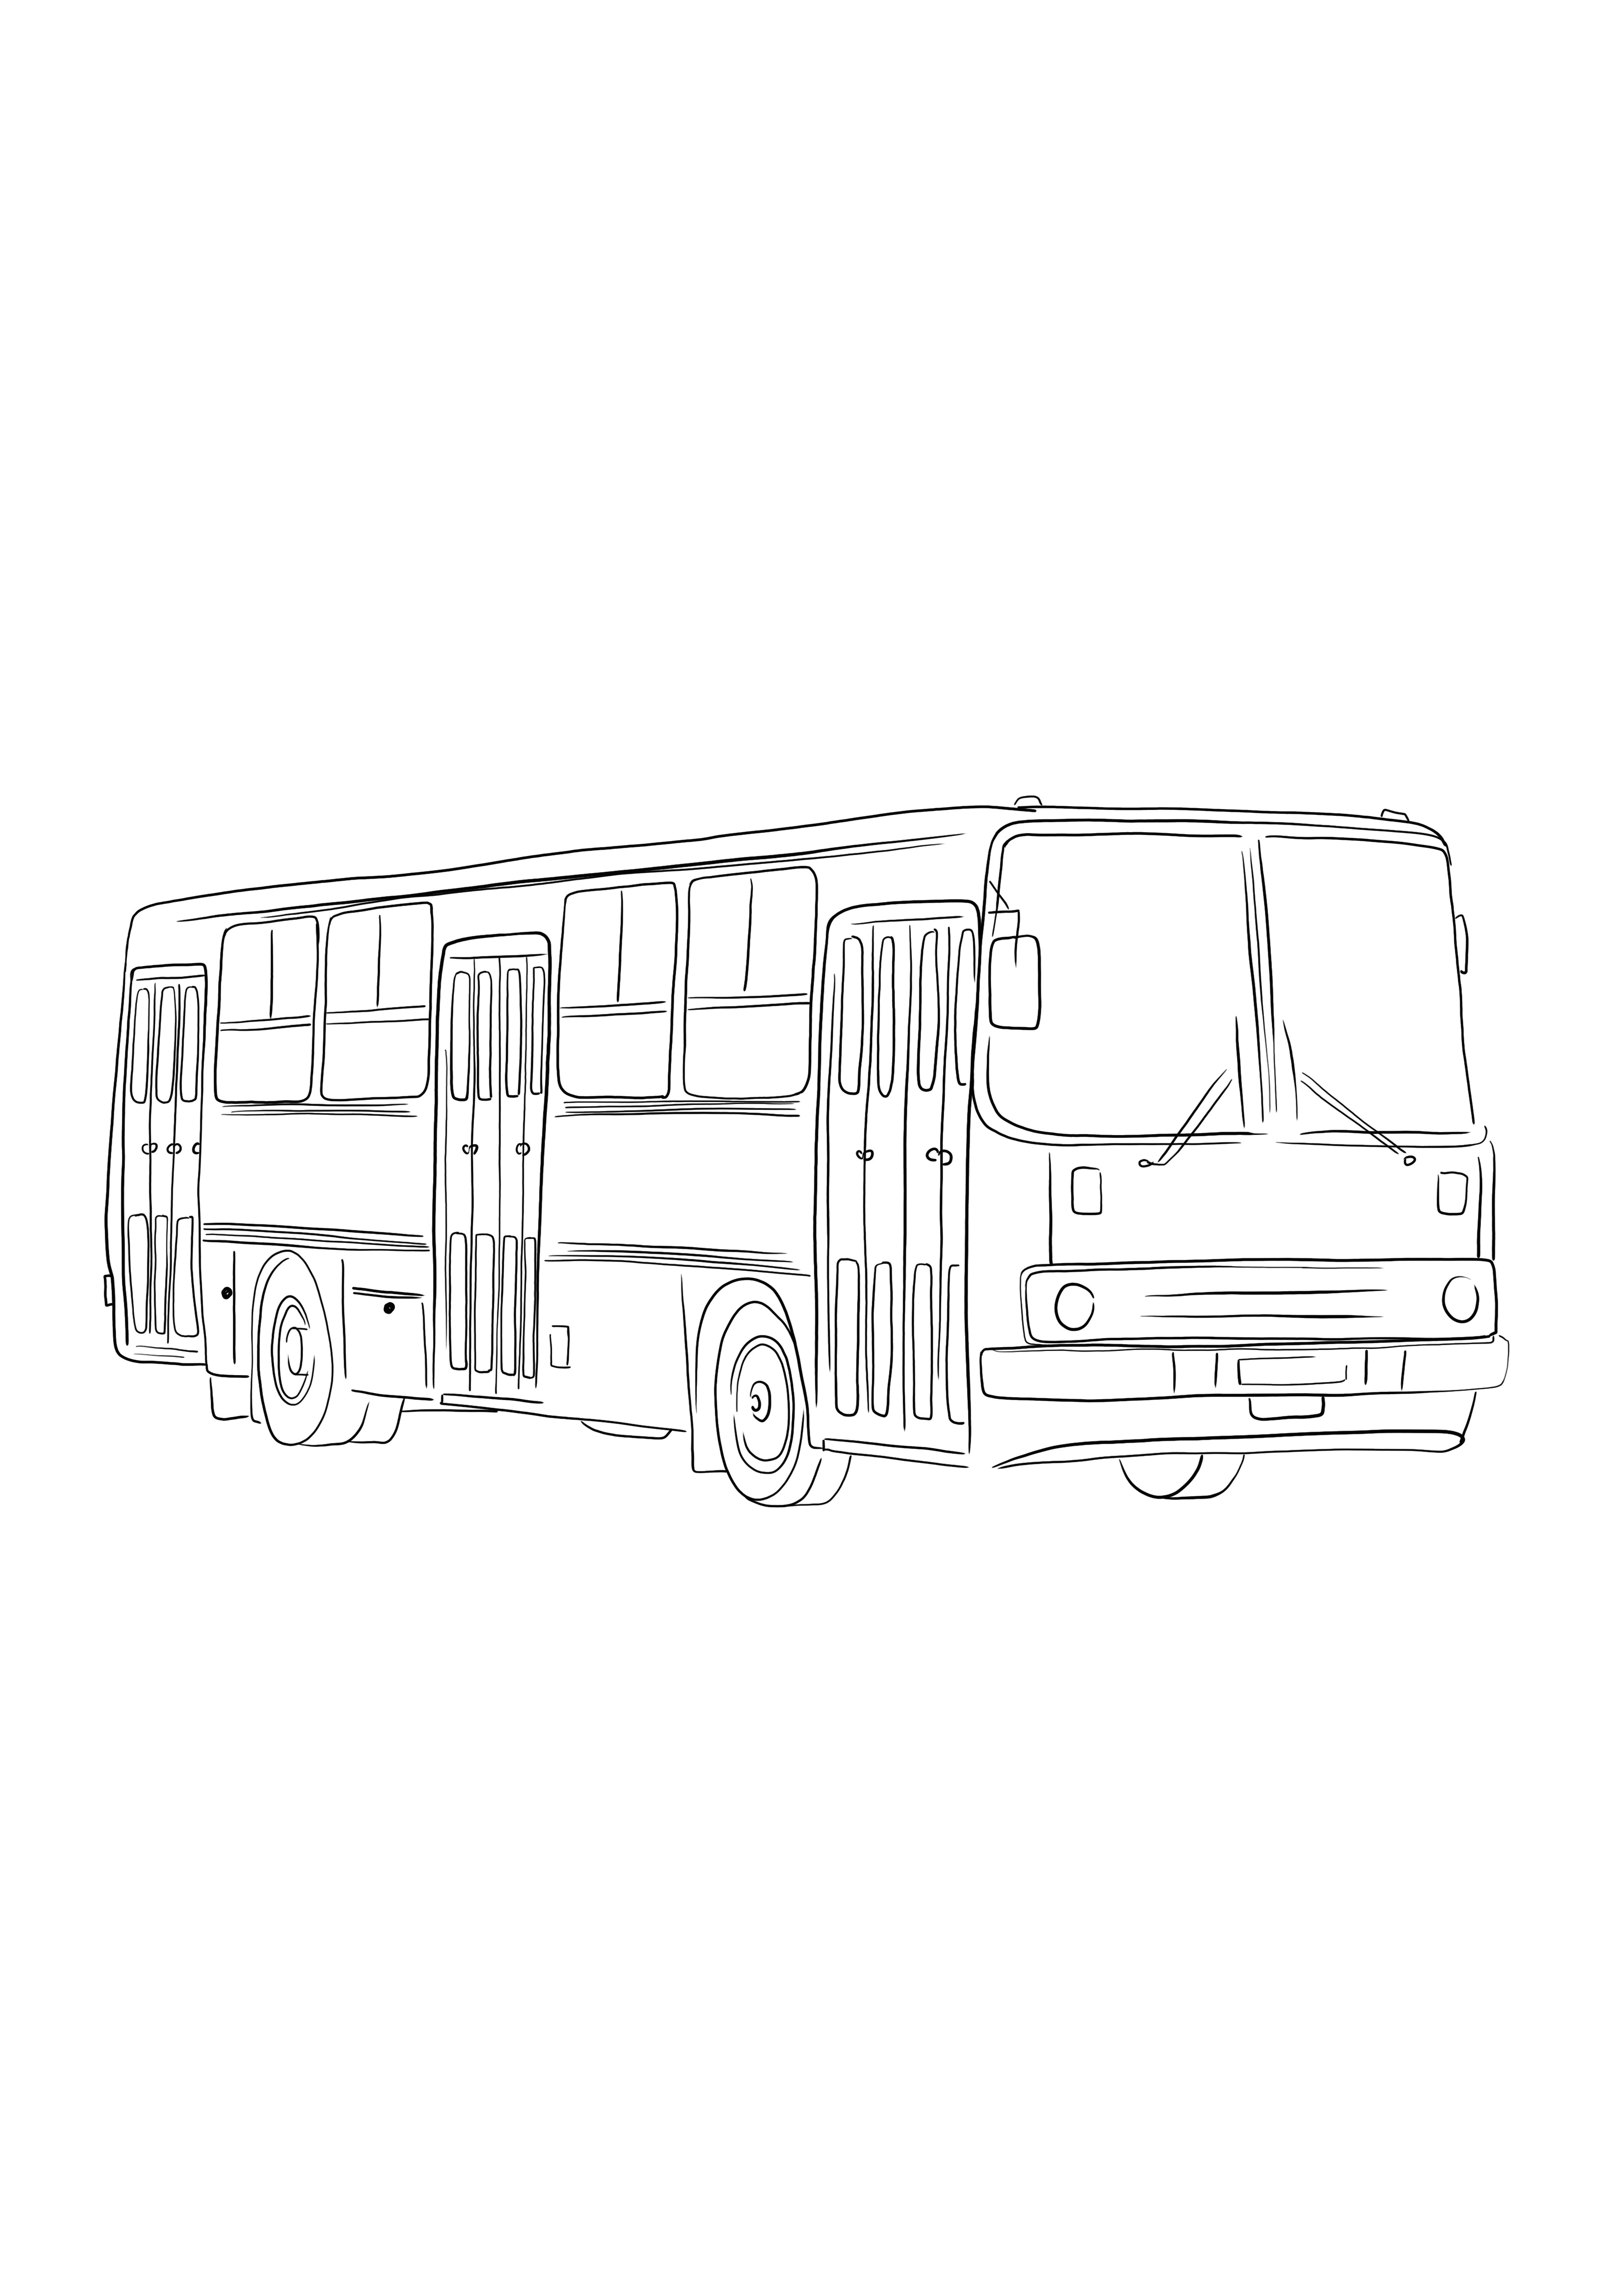 Coloração de ônibus russo e impressão gratuita